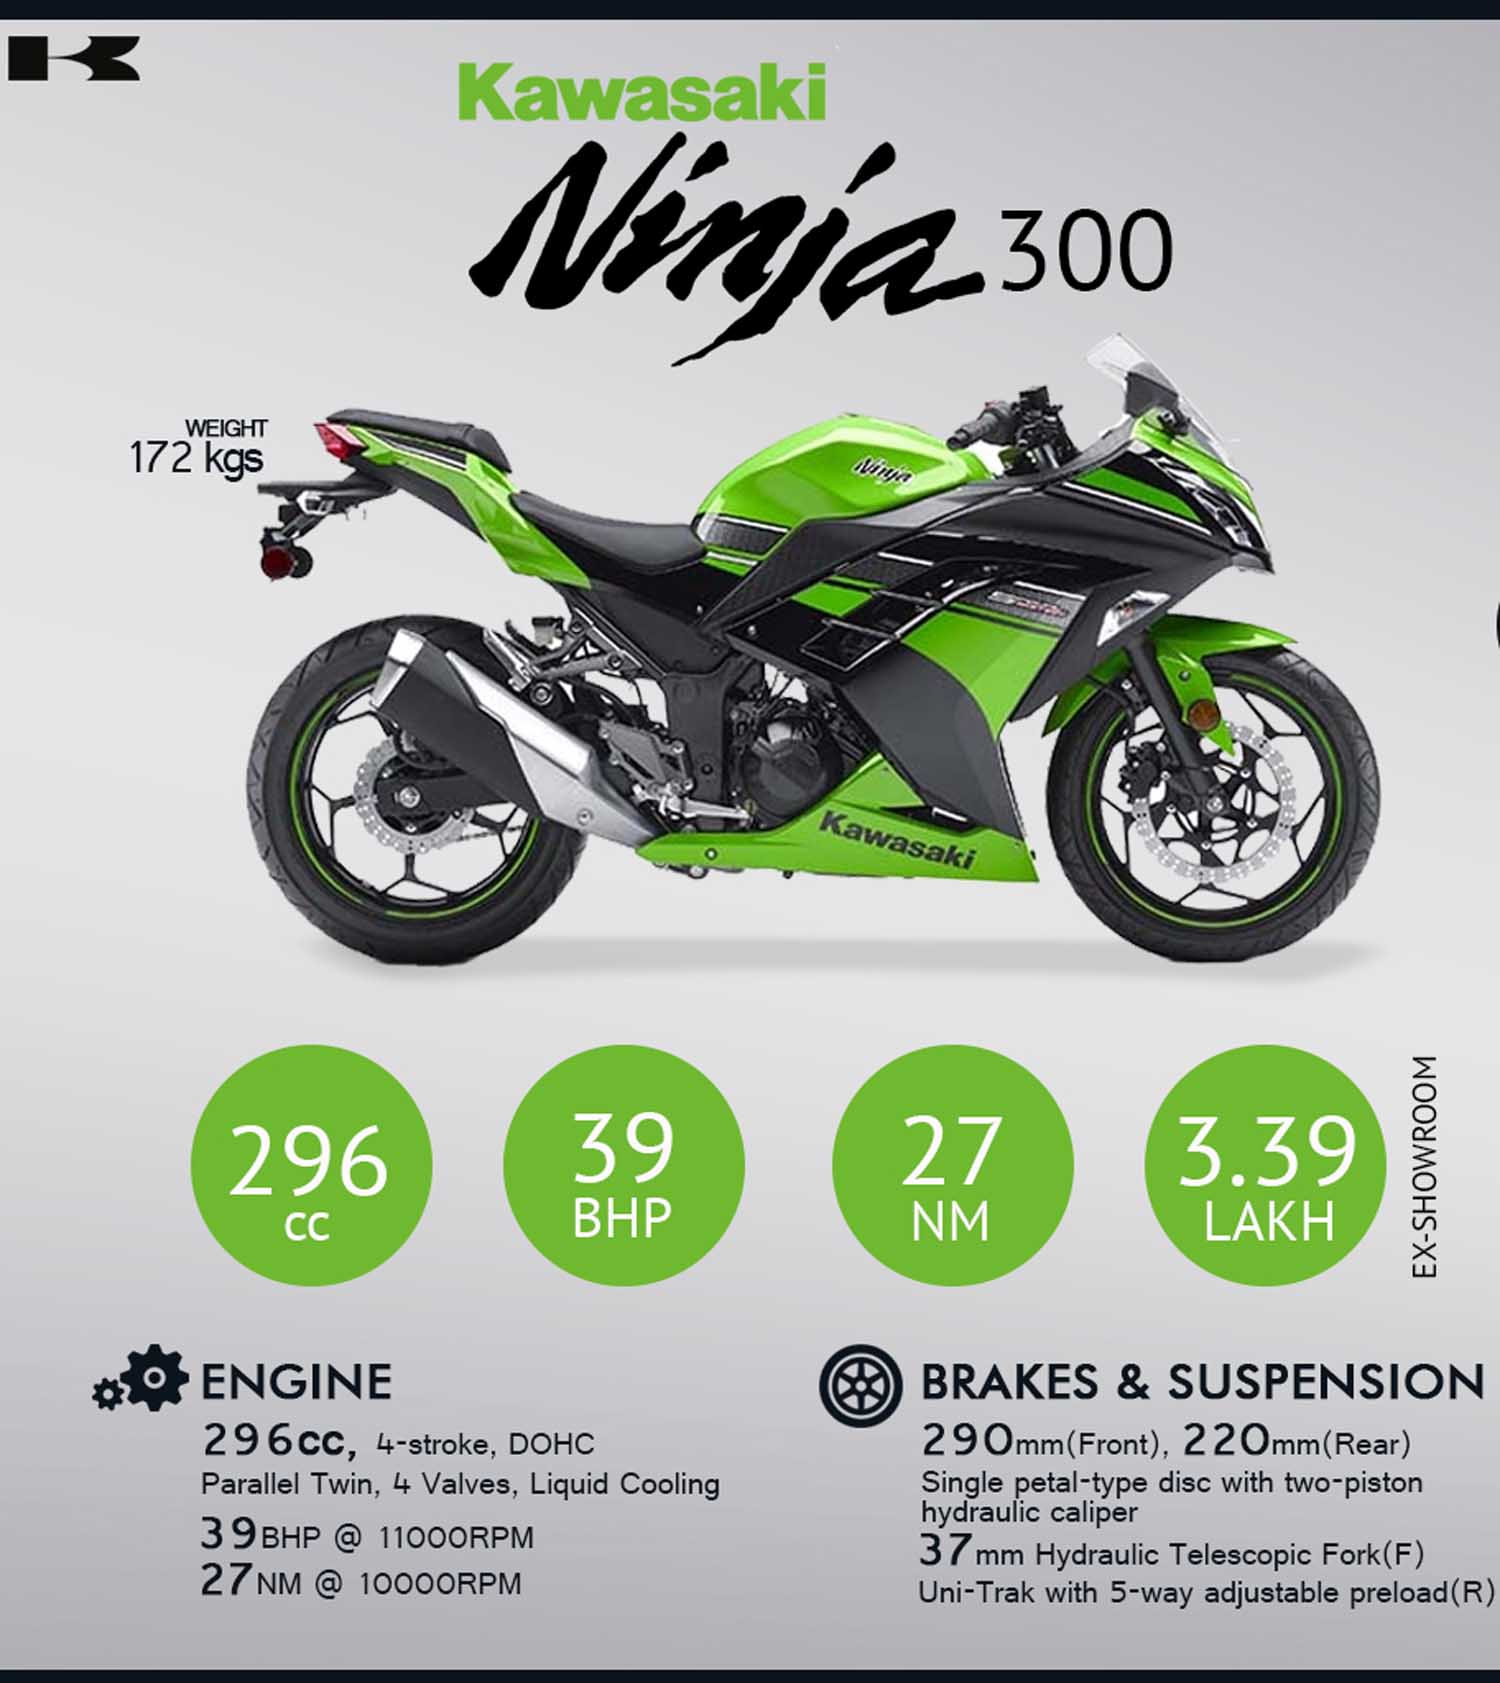 Kawasaki Ninja 300 Hanya Dijual 300 Unit Carmudi Indonesia